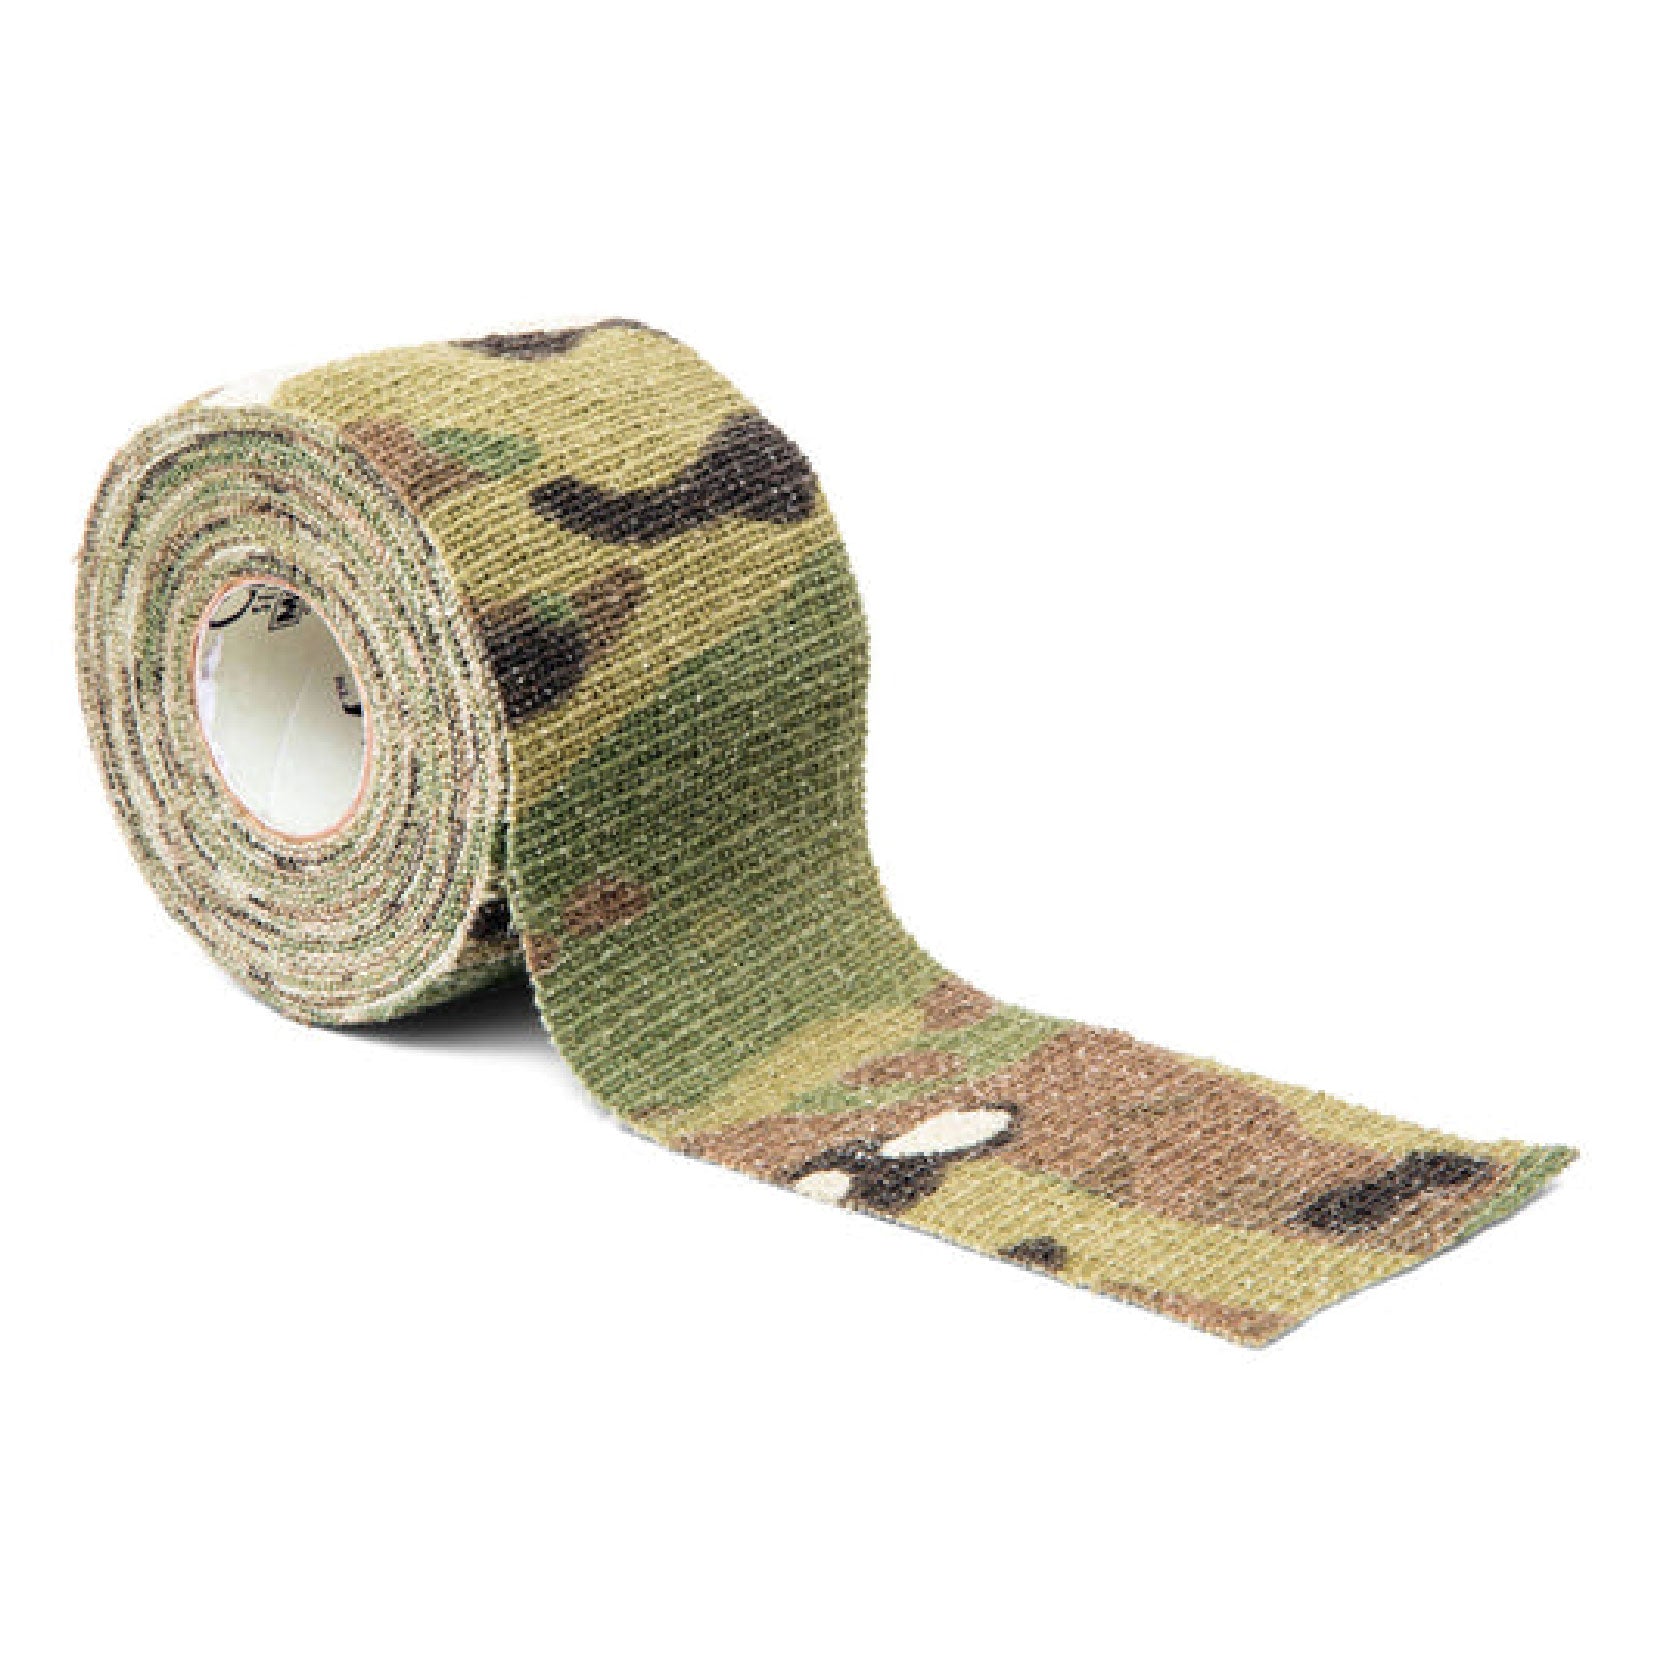 Gear Aid Camo Form Reusable Fabric Wrap, 2” x 144” Roll